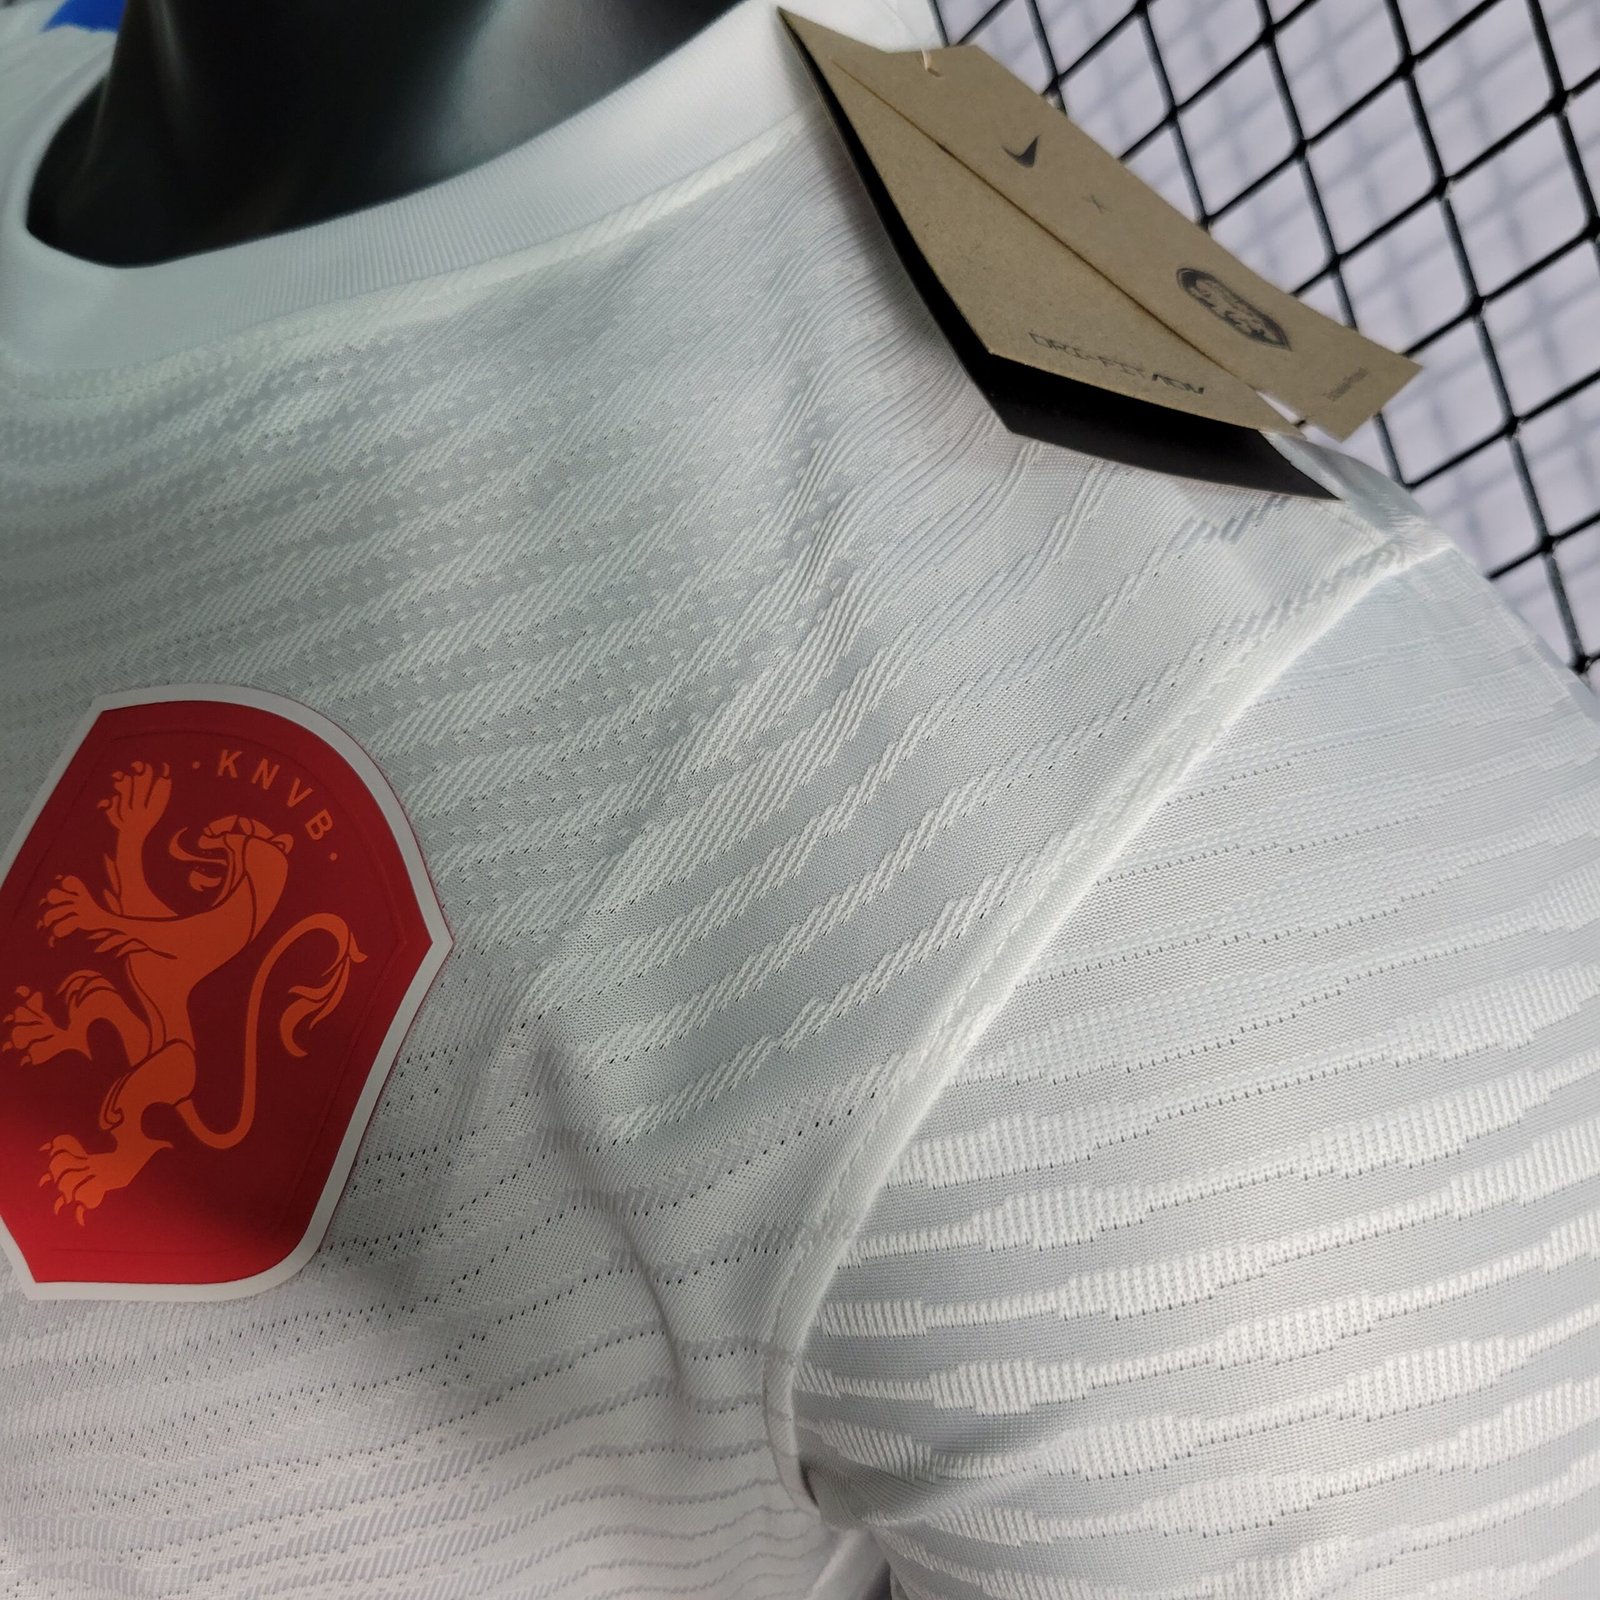 Camisa II da Holanda Branca Away 2022 – Versão Jogador – KS Sports – Camisas  de Times e Seleções